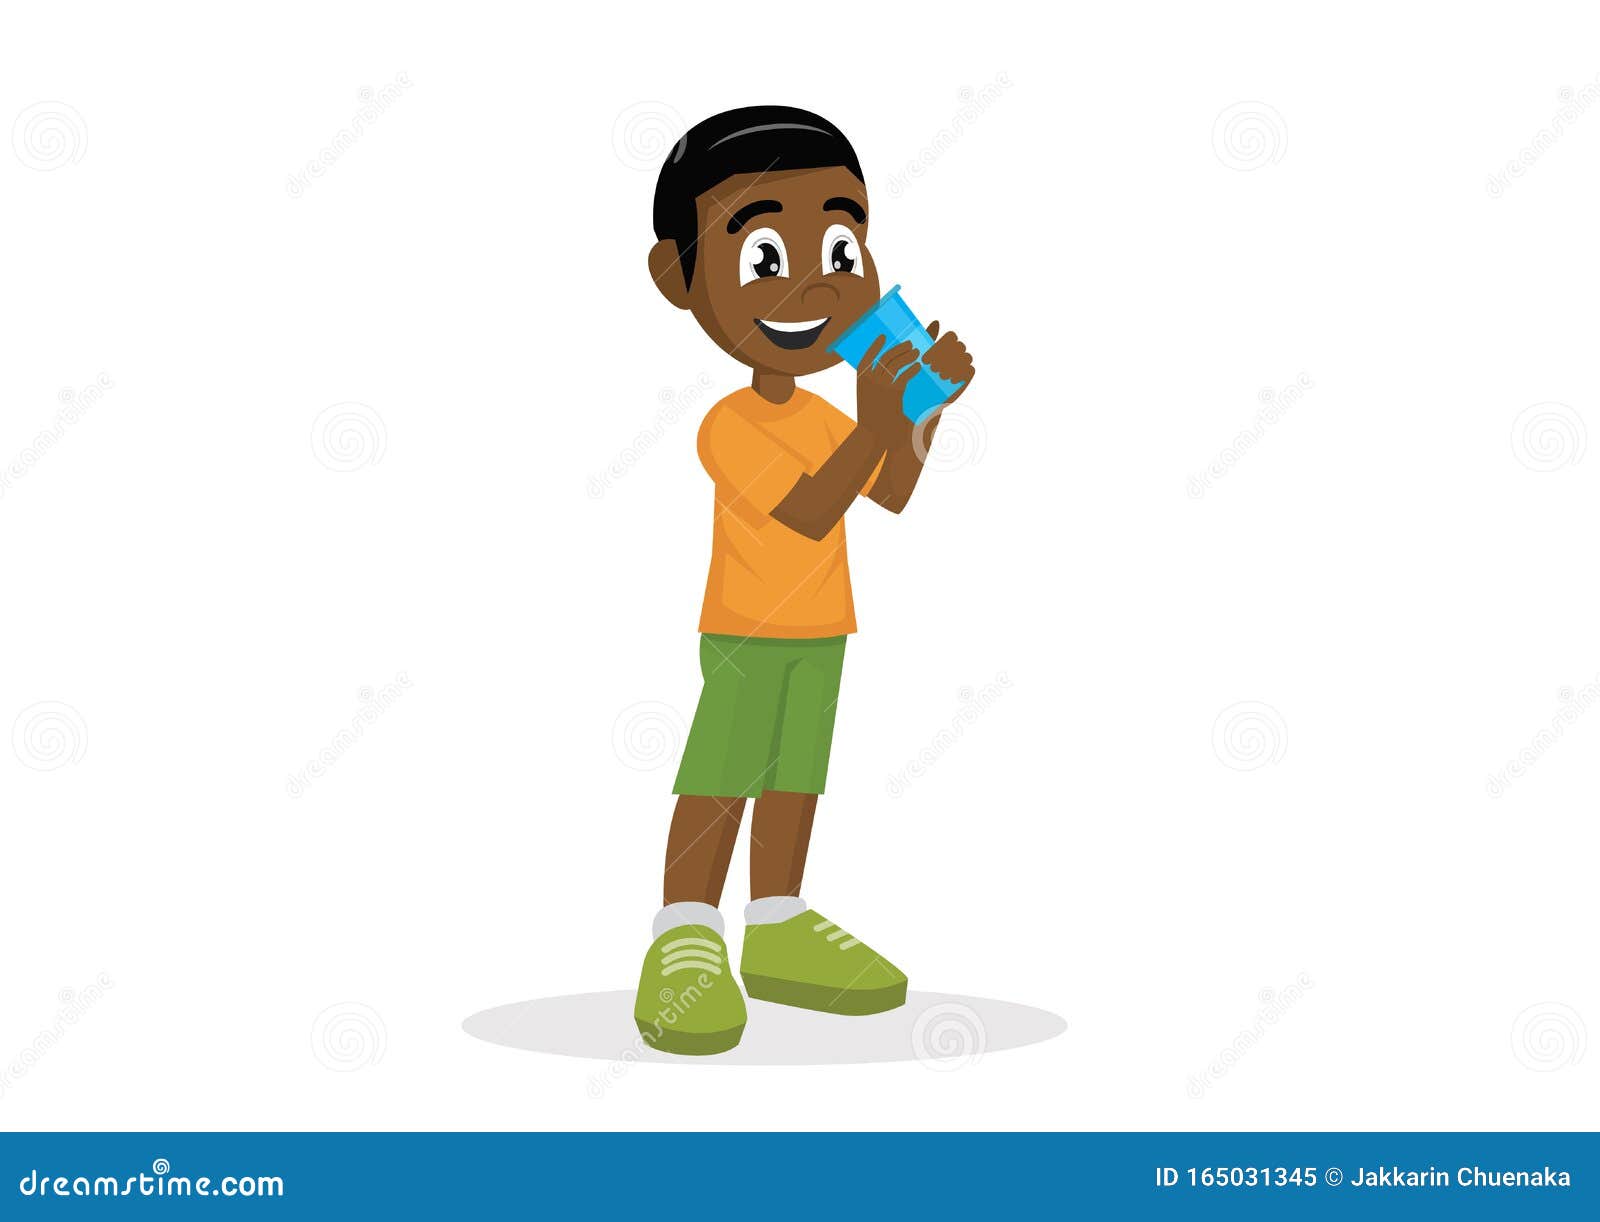 卡通棕色男孩與非洲頭髮卡通人物 向量, 非洲裔, 貼紙, 卡通片向量圖案素材免費下載，PNG，EPS和AI素材下載 - Pngtree